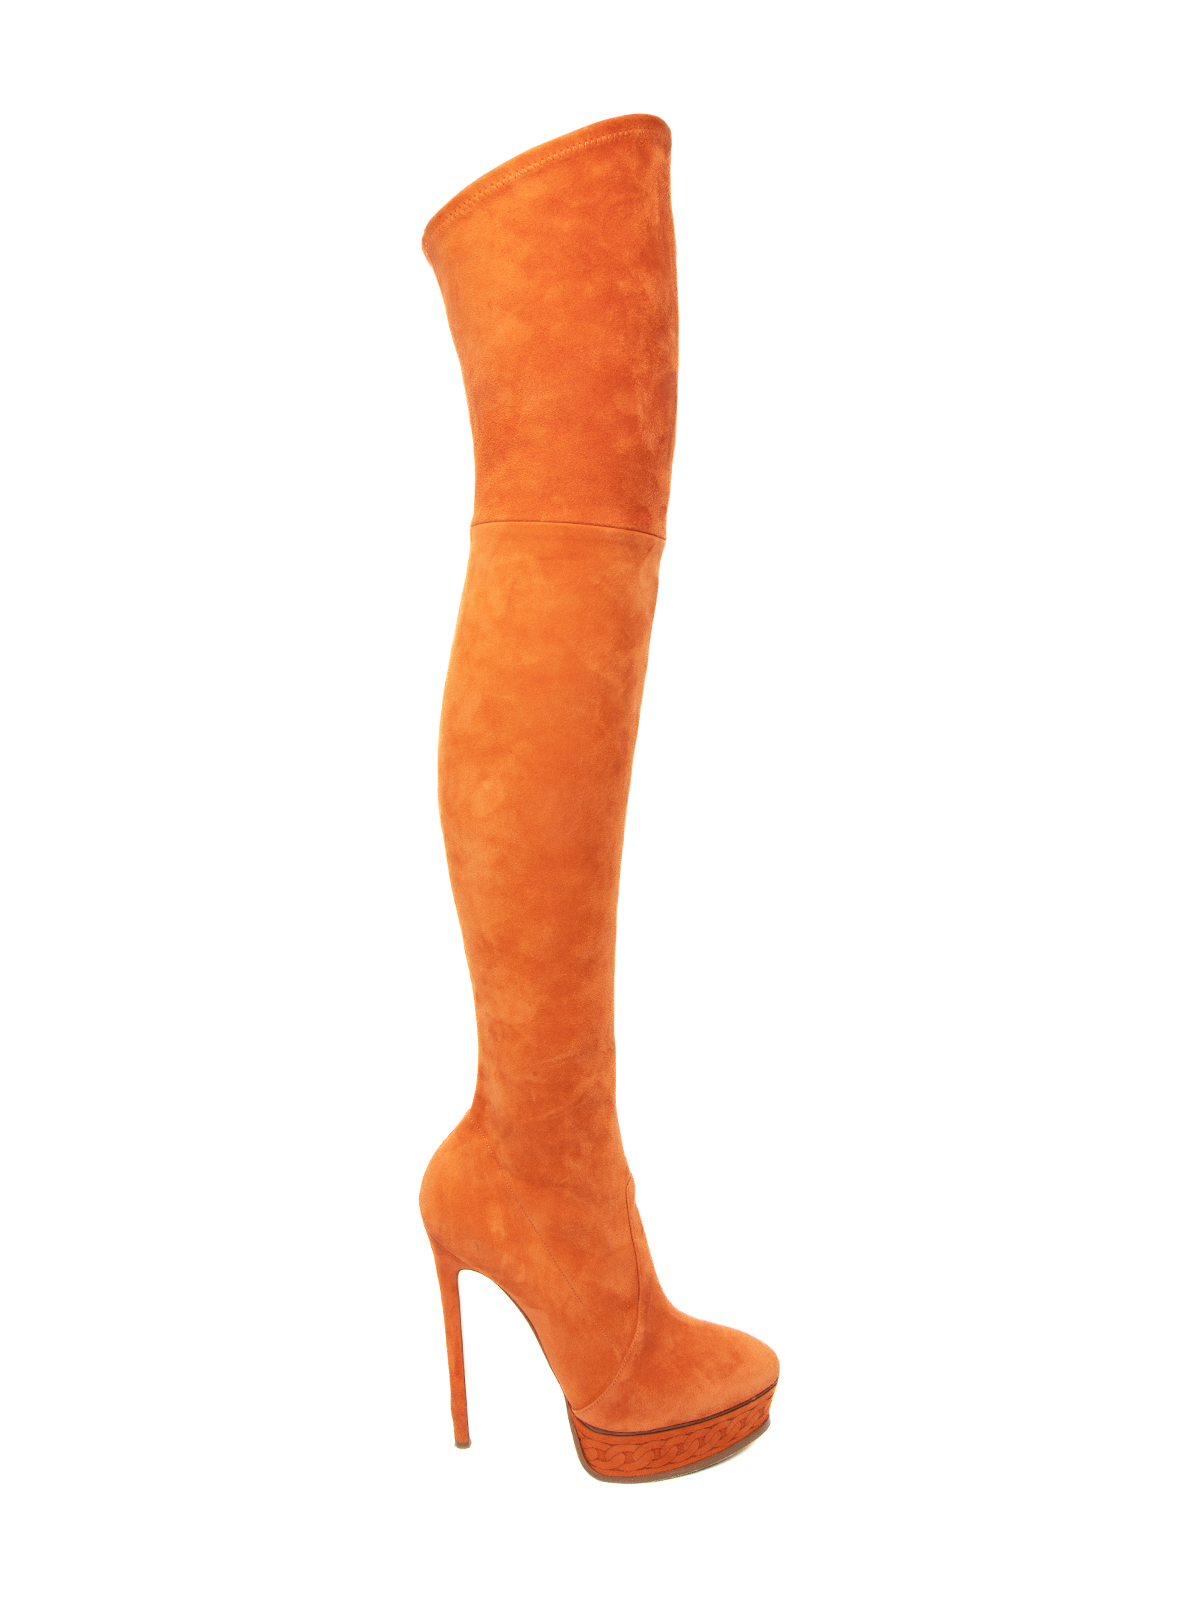 Casadei Orange Suede Knee High Blade Boots